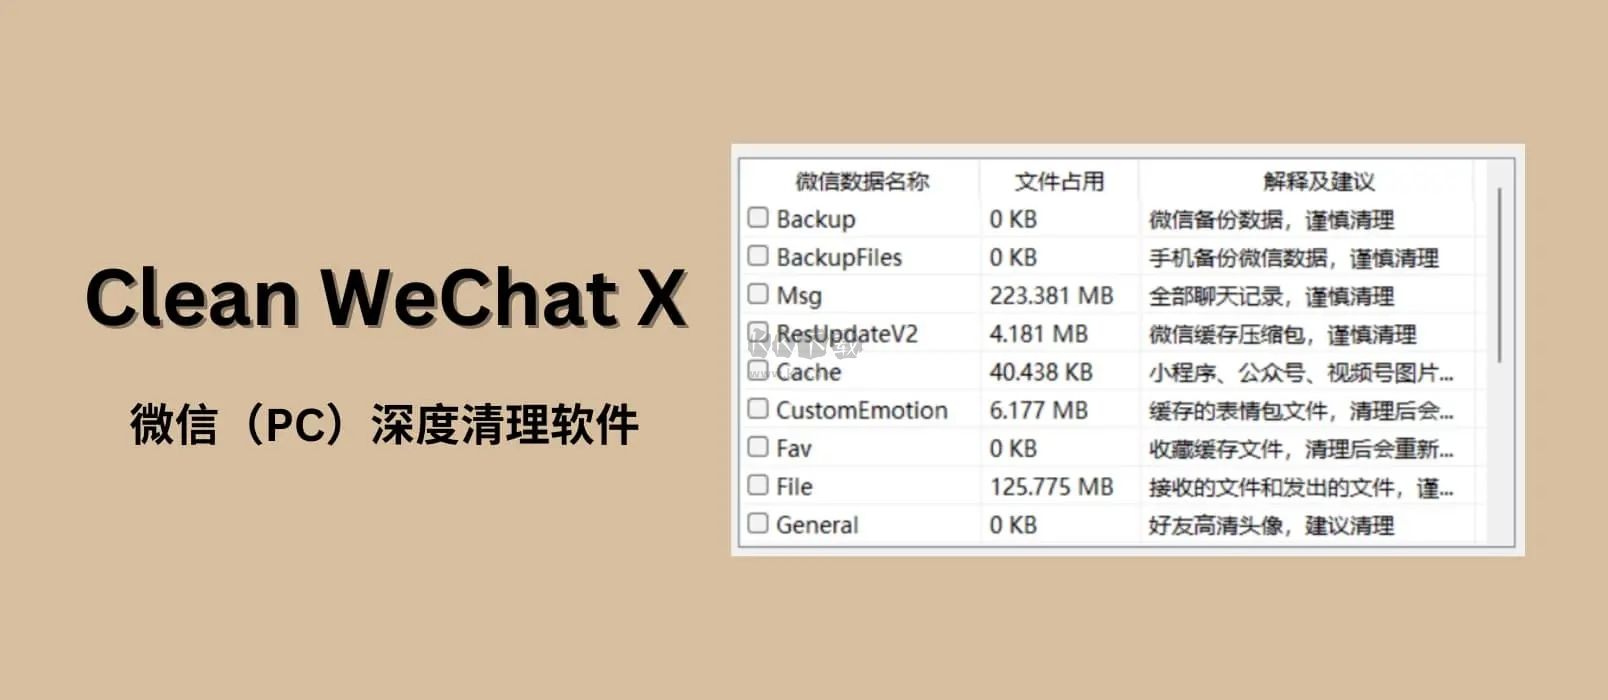 Clean WeChat X΢